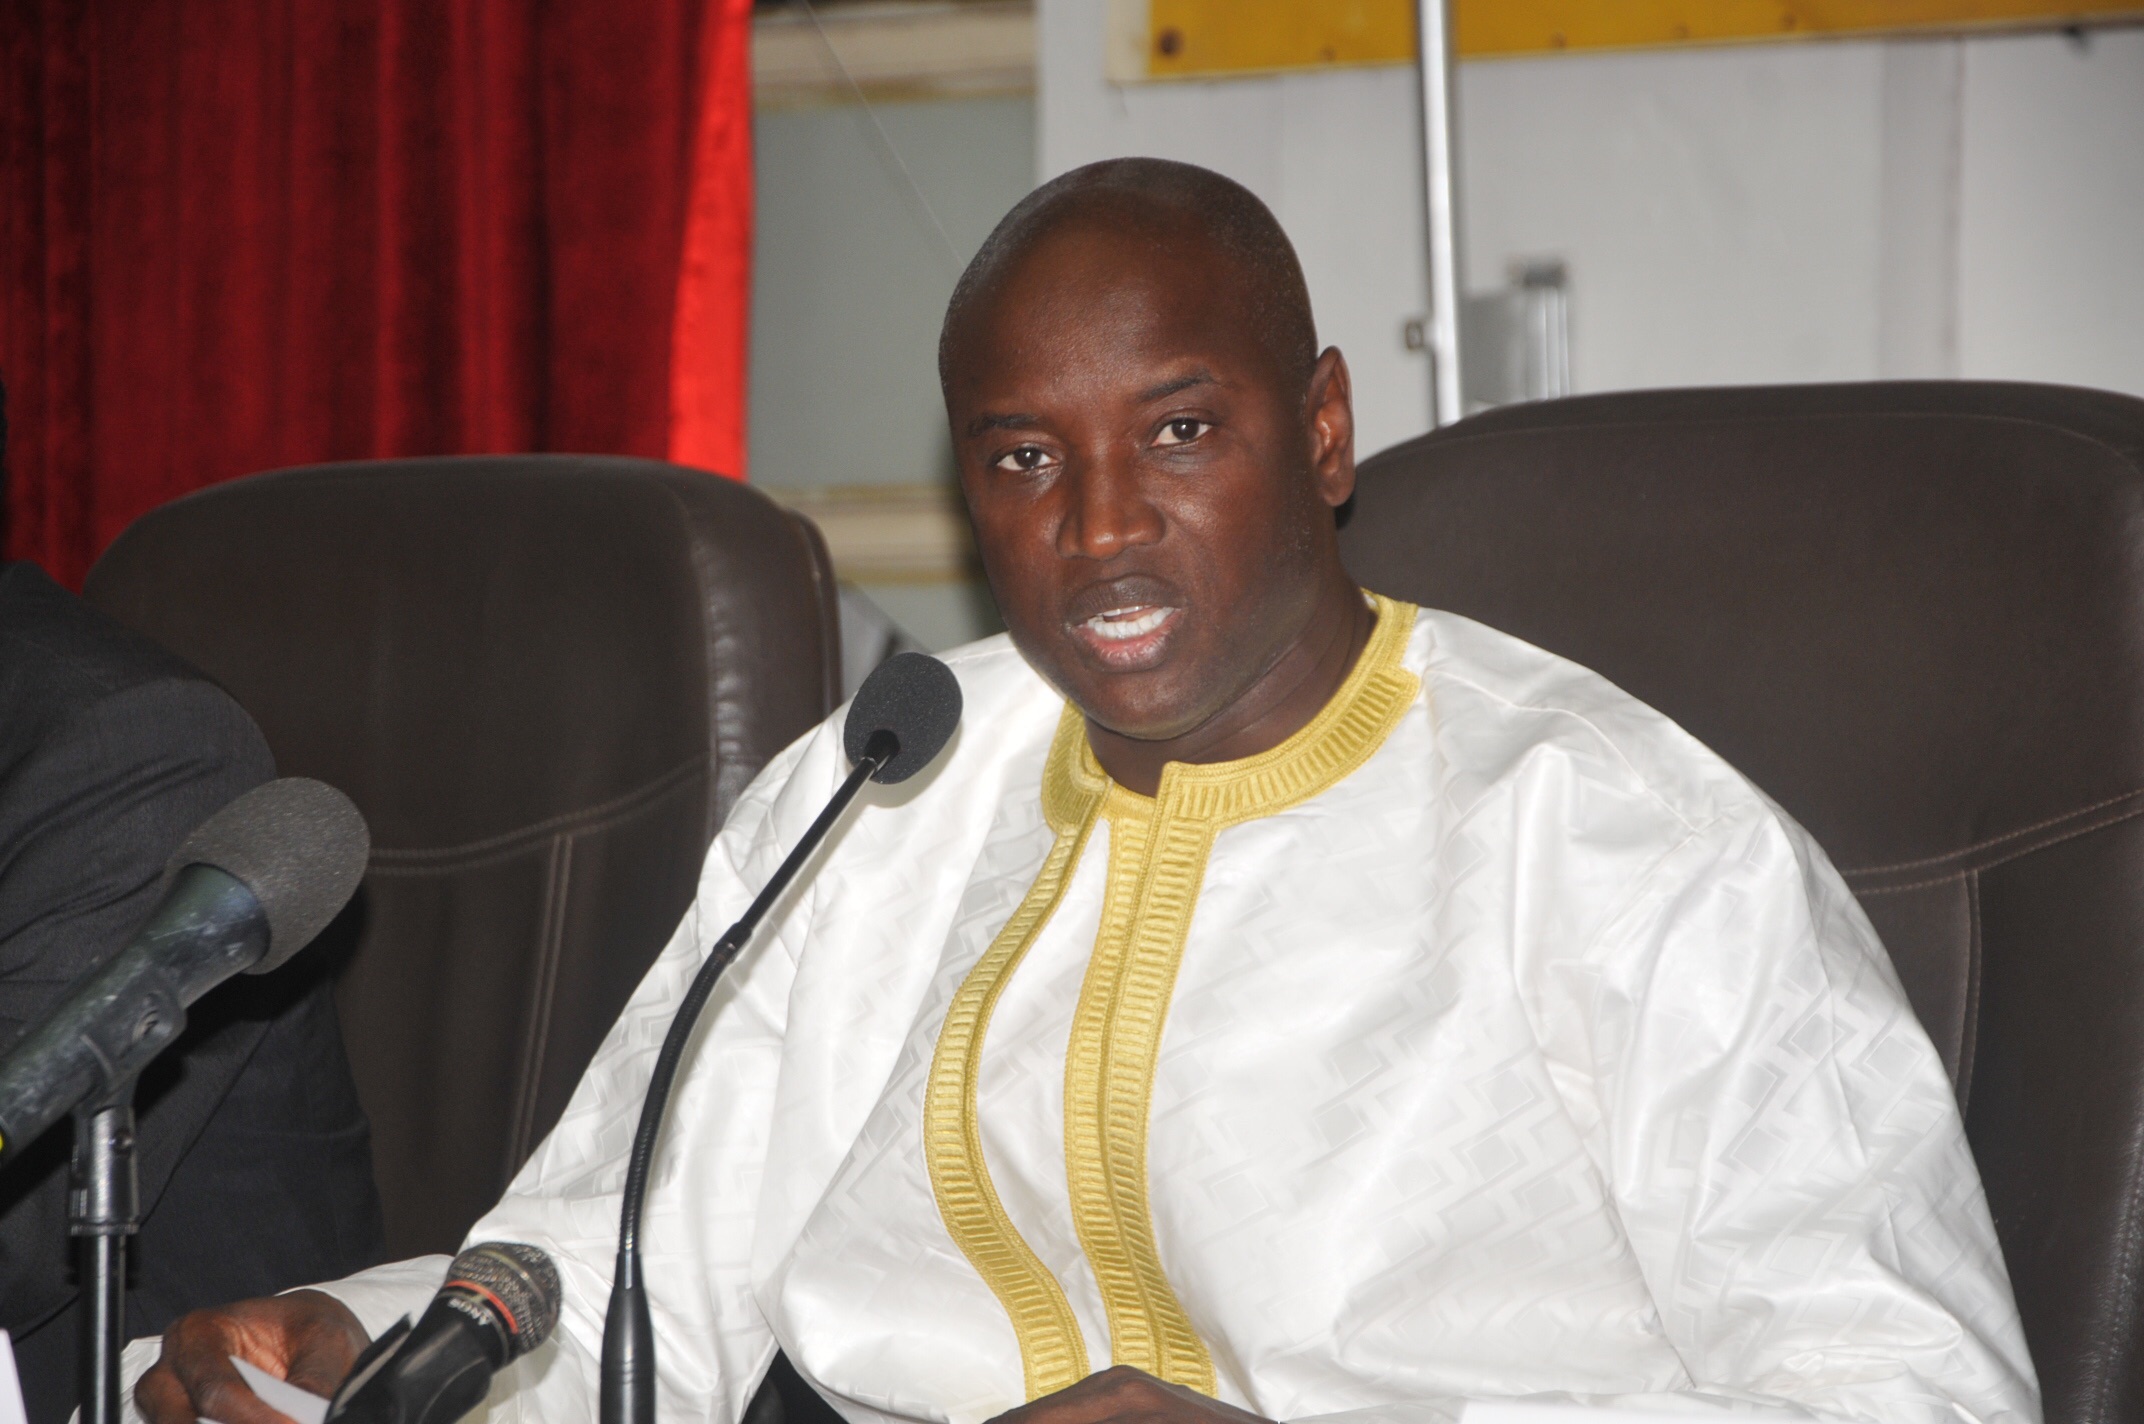 Covid-19 et Korité : Aly Ngouille Ndiaye suspend les autorisations spéciales de circuler